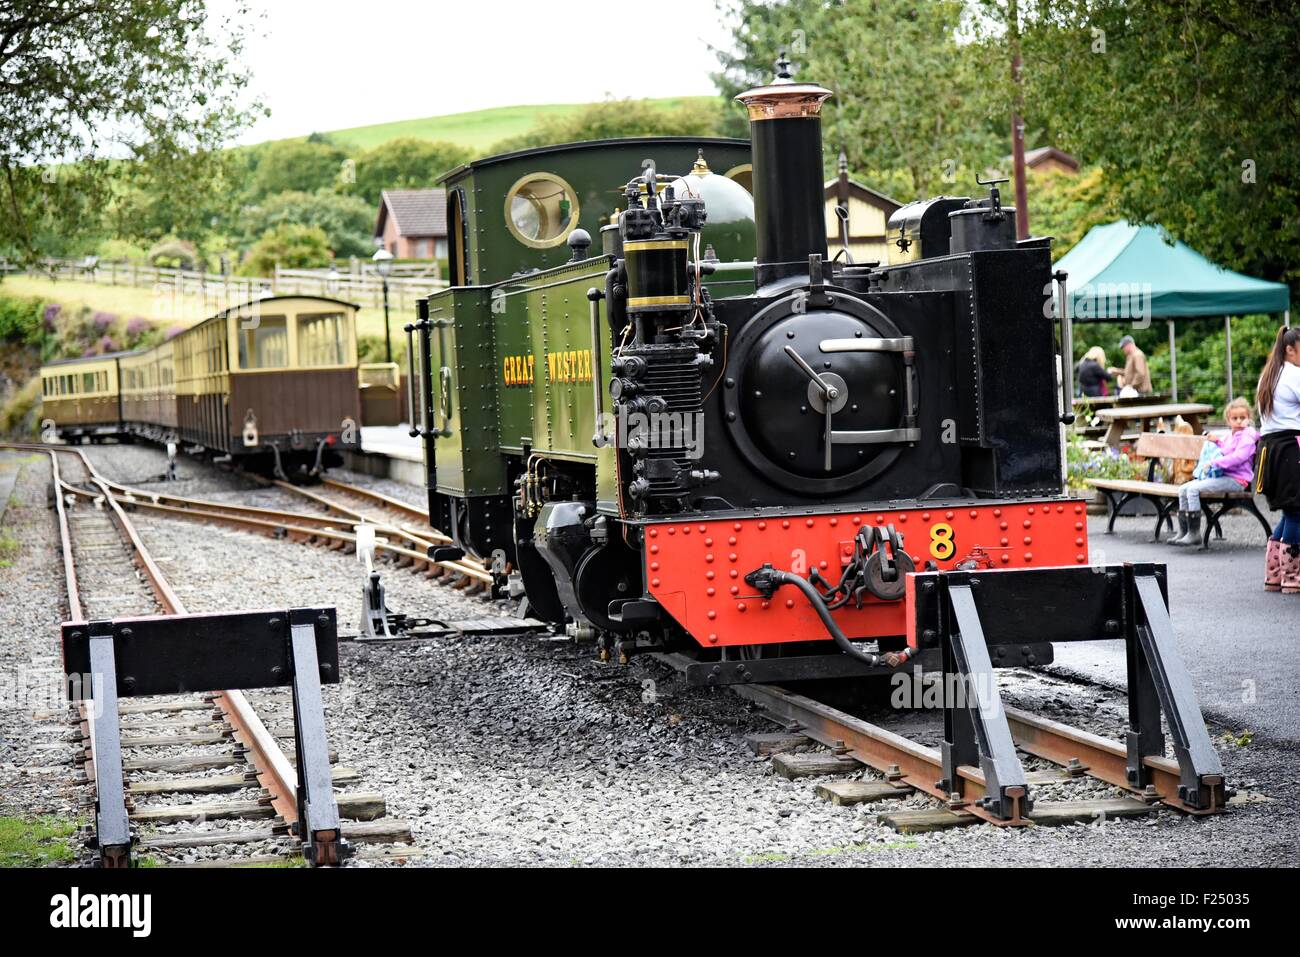 The Vale of Rheidol Railway (Welsh: Rheilffordd Cwm Rheidol) is a 1 ft 11 3⁄4 in (603 mm) narrow gauge heritage steam railway Stock Photo